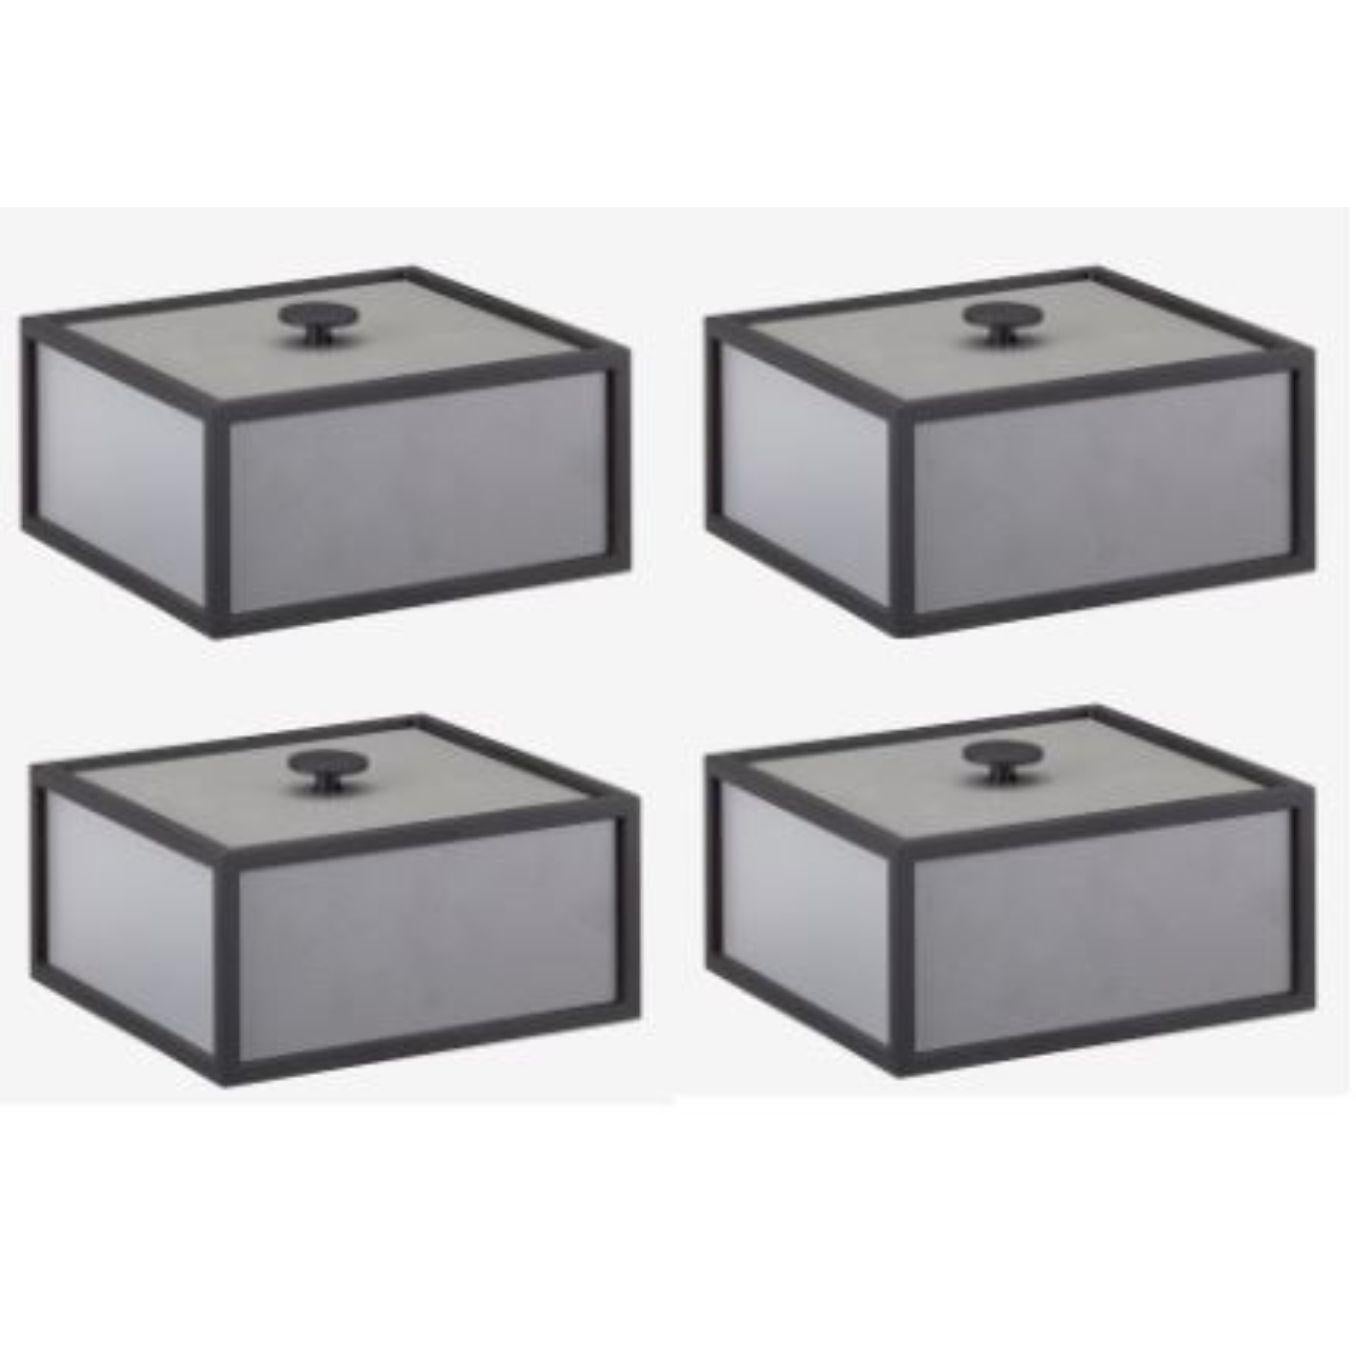 4er-Set dunkelgrauer rahmen 14 box von Lassen
Abmessungen: D 10 x B 10 x H 7 cm 
MATERIALIEN: Finér, Melamin, Melamin, Metall, Furnier
Gewicht: 1.10 kg

Frame Box ist eine quadratische Box in kubistischer Form. Die schlichten Kästen sind von den